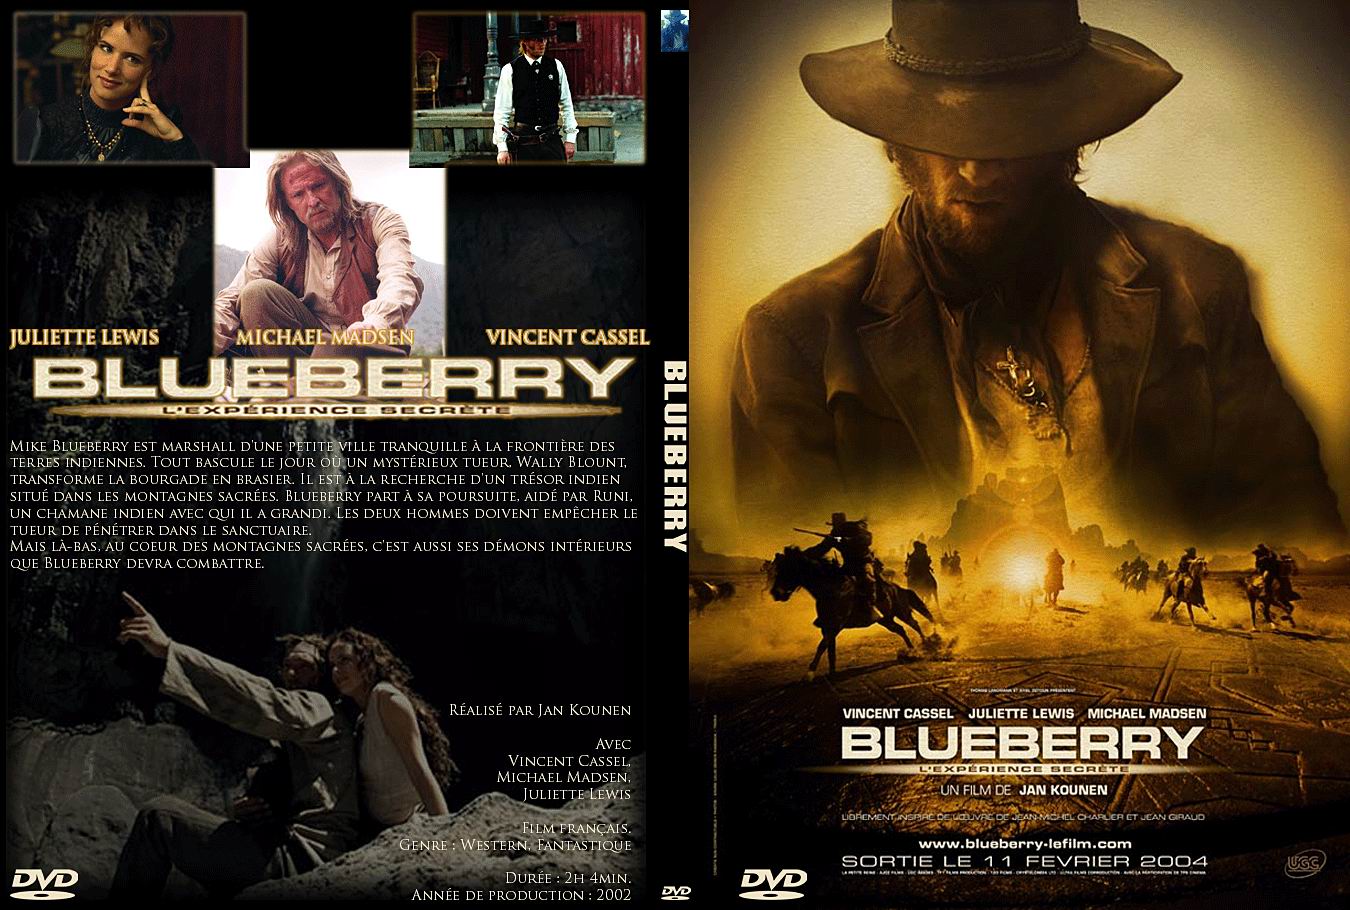 Jaquette DVD Blueberry - SLIM v2